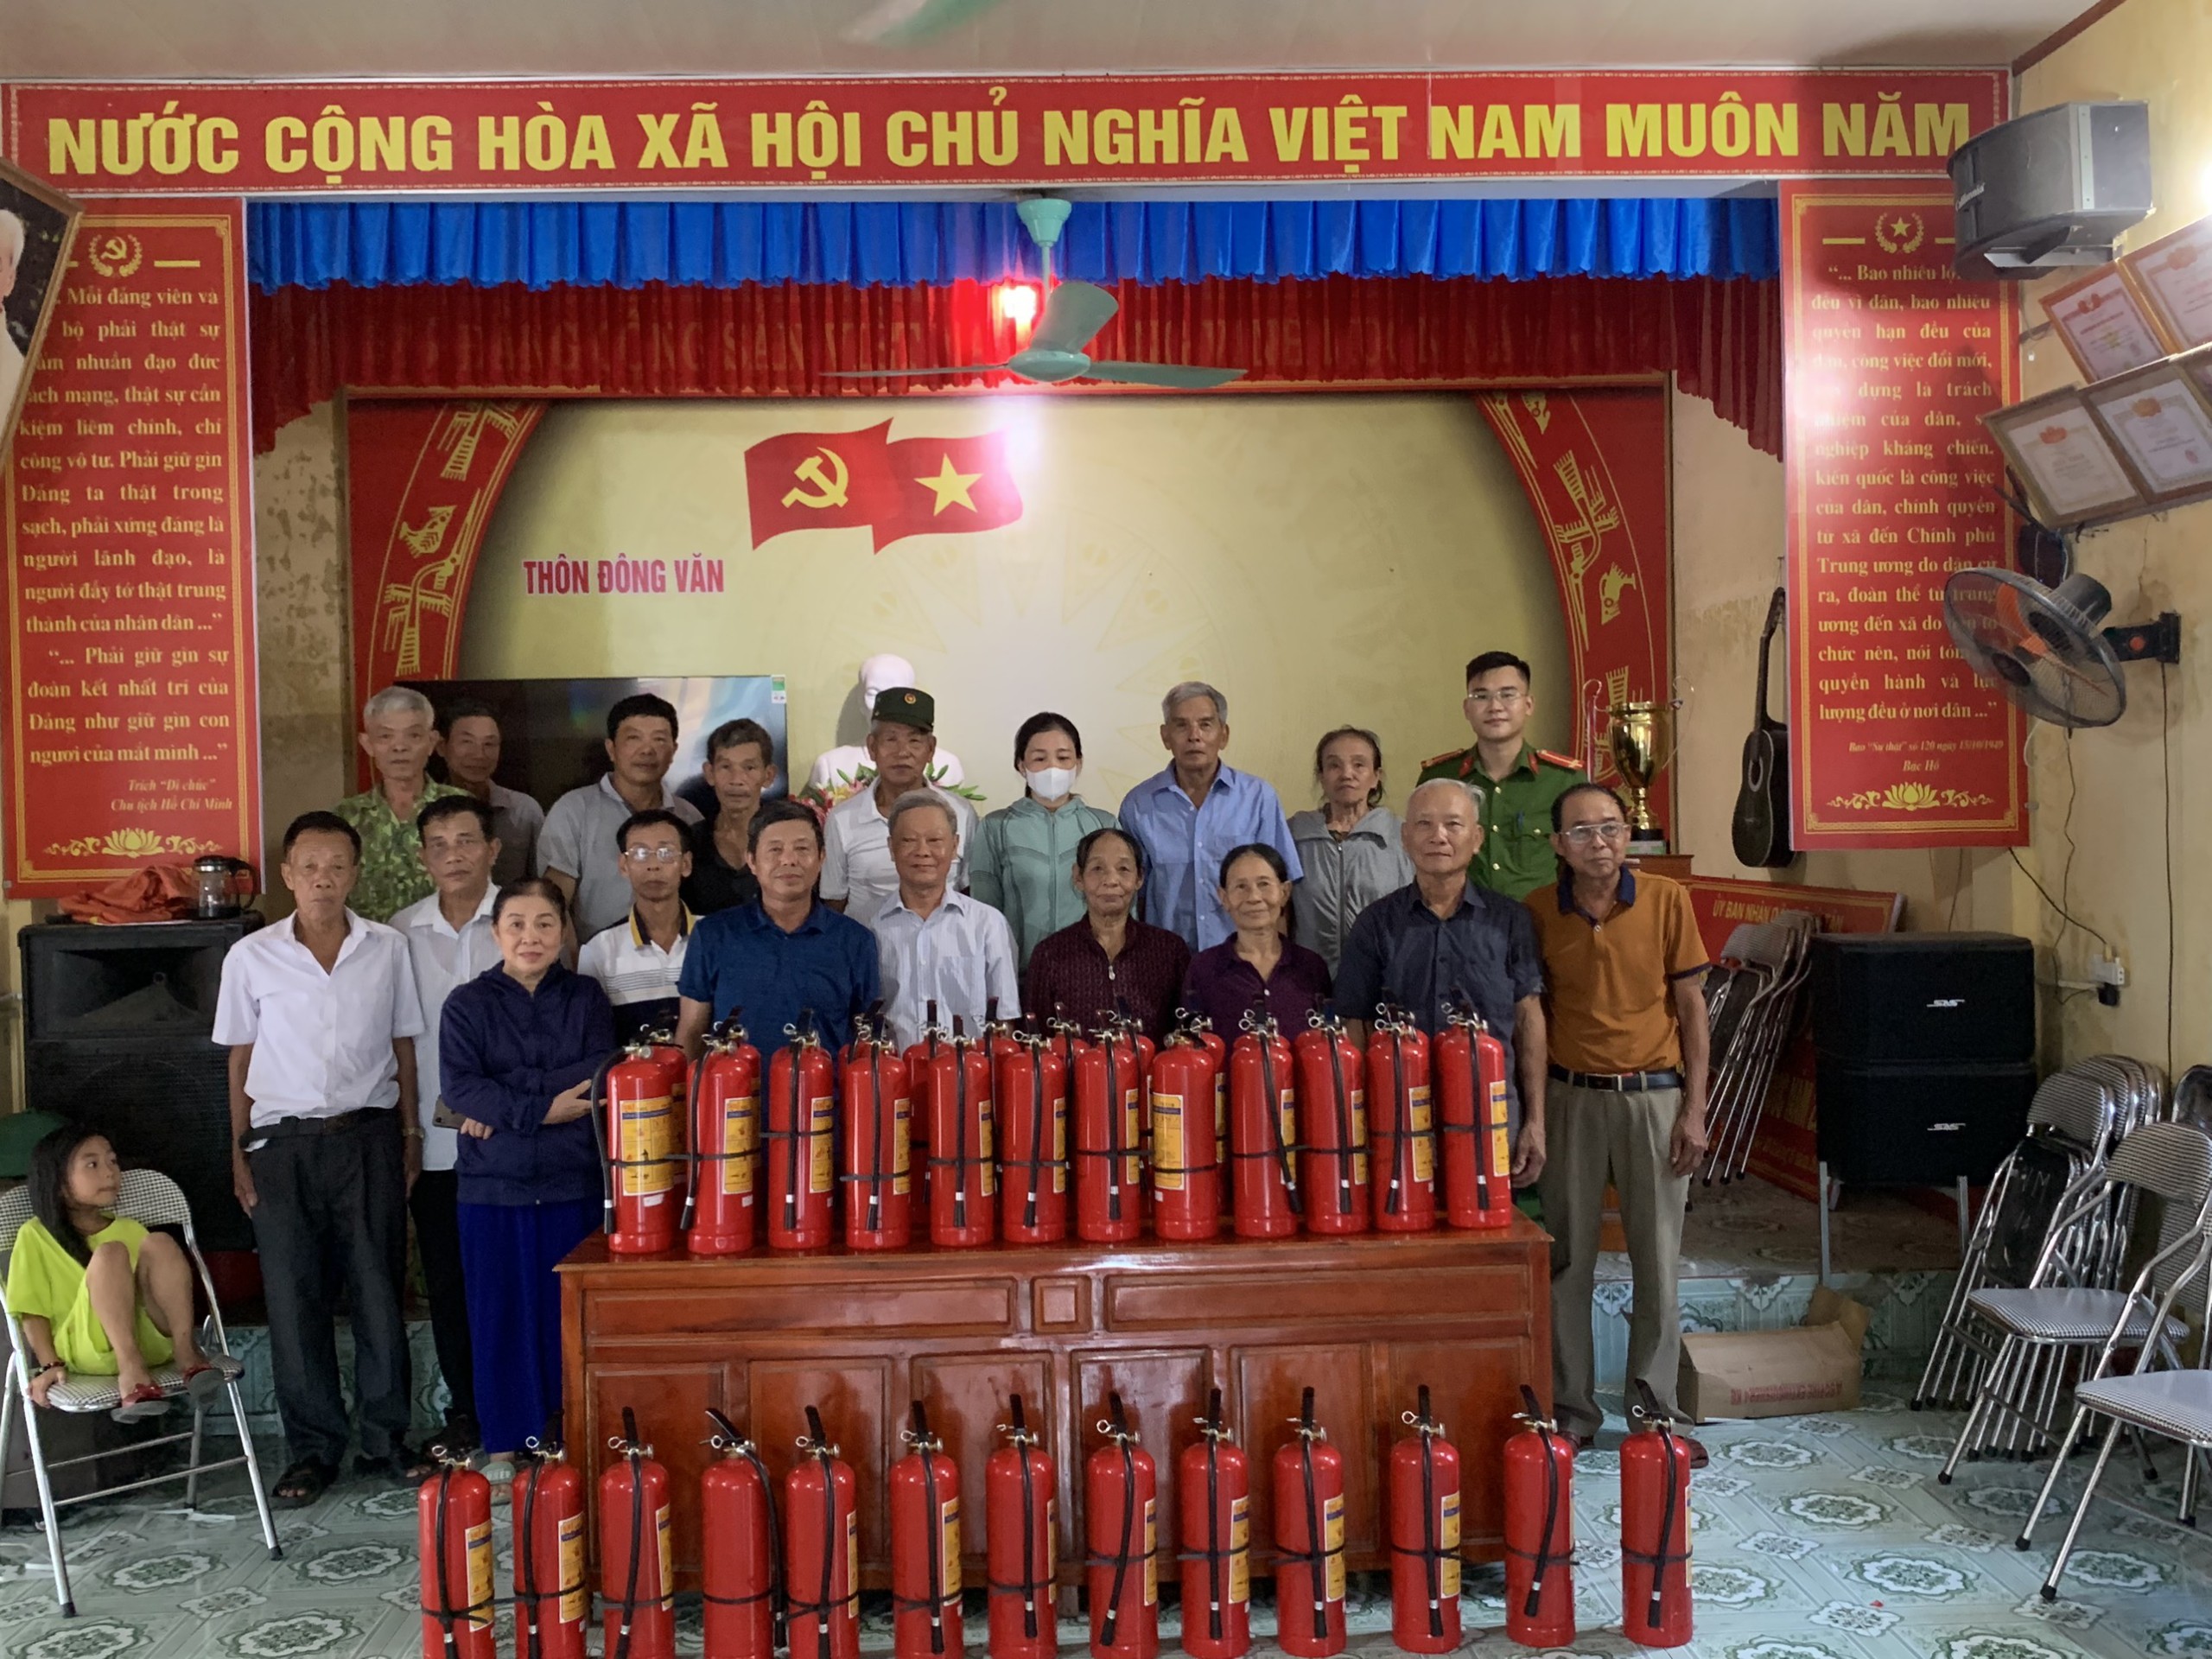 Ban công an xã tuyên truyền cán bộ Đảng viên và Nhân dân mua bình chữa cháy tại thôn Đông Văn, Kỳ Tân